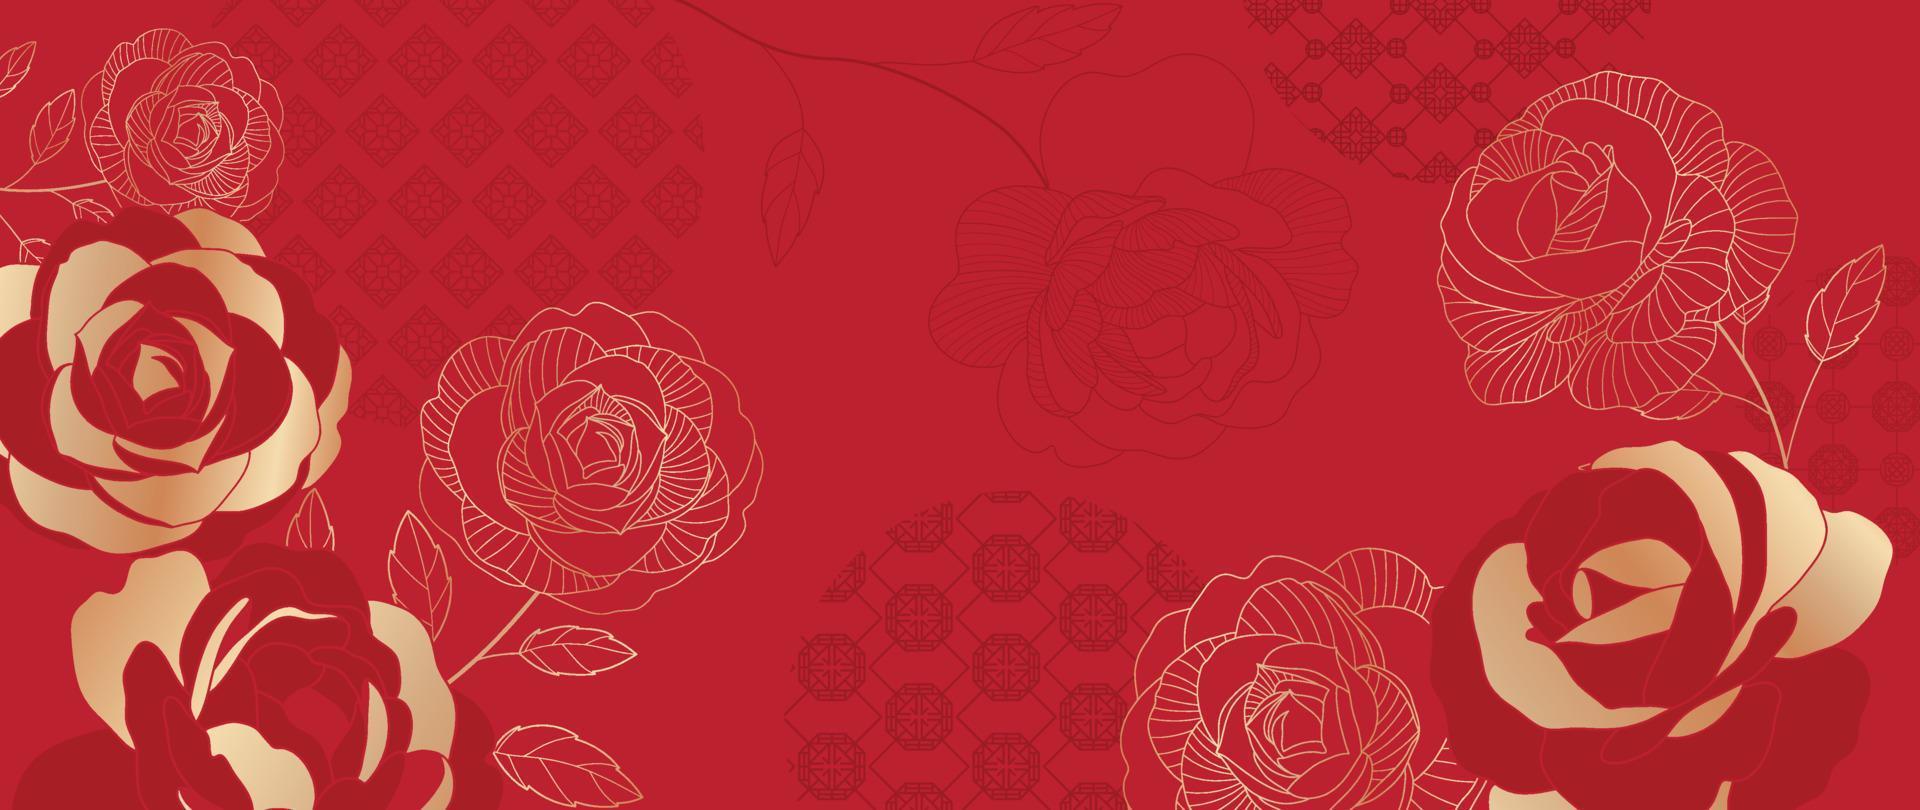 vector de fondo de patrón de estilo de lujo japonés y chino oriental. flor de rosa botánica con textura dorada sobre fondo rojo patrón chino. ilustración de diseño para papel tapiz, tarjeta, afiche.